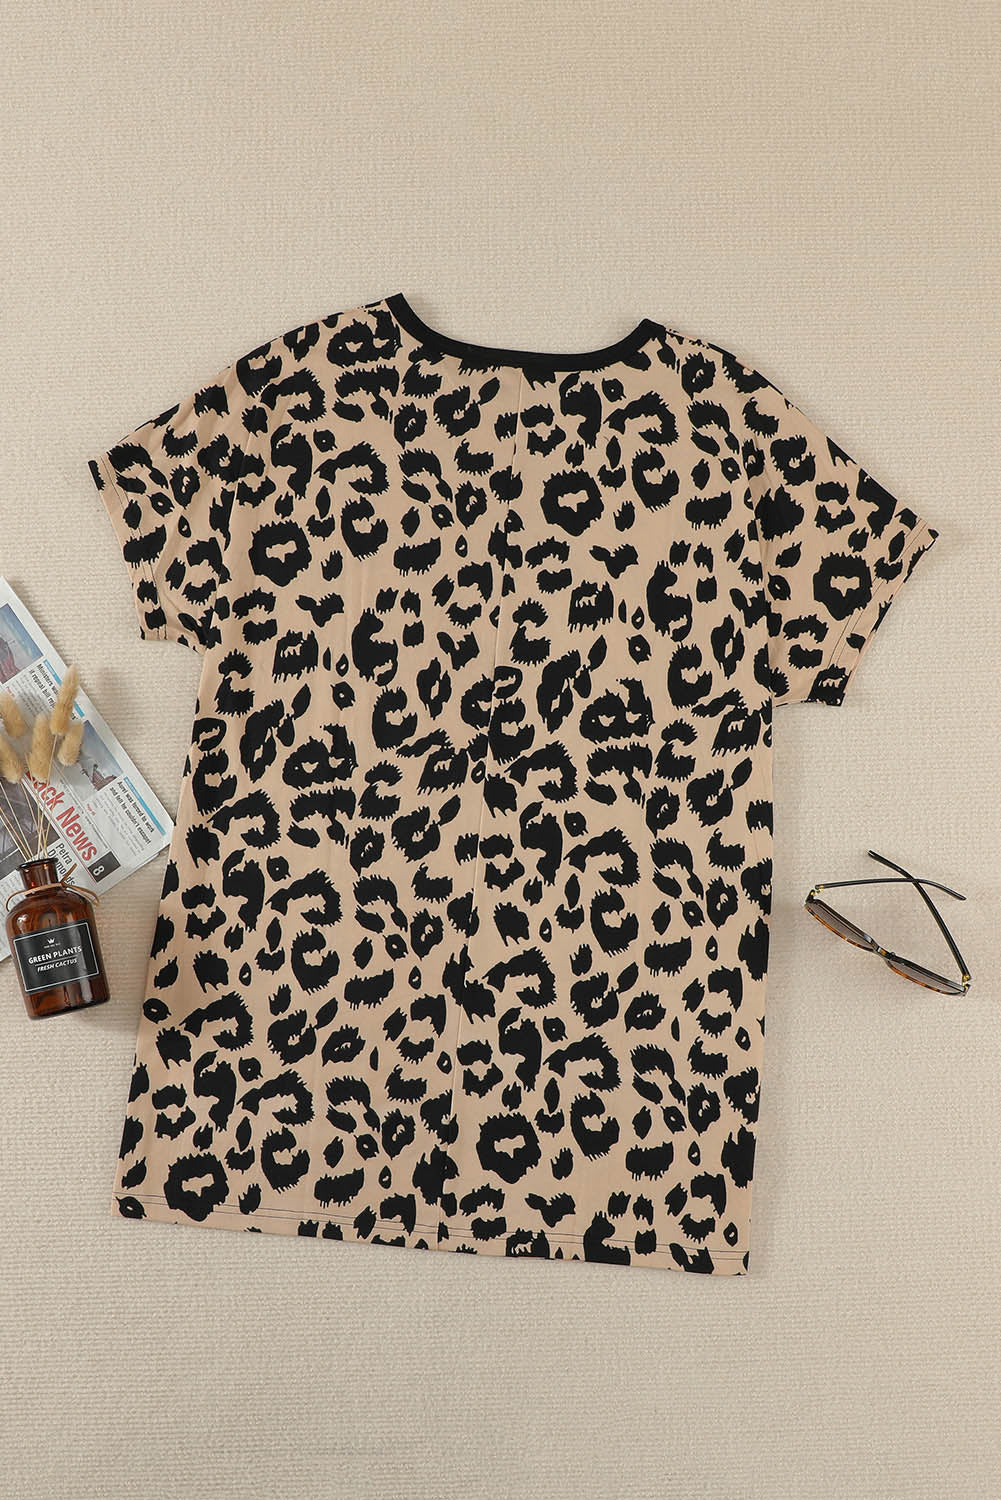 Robe T-shirt Courte Mmarron Poches Imprime Leopard Manches Courtes